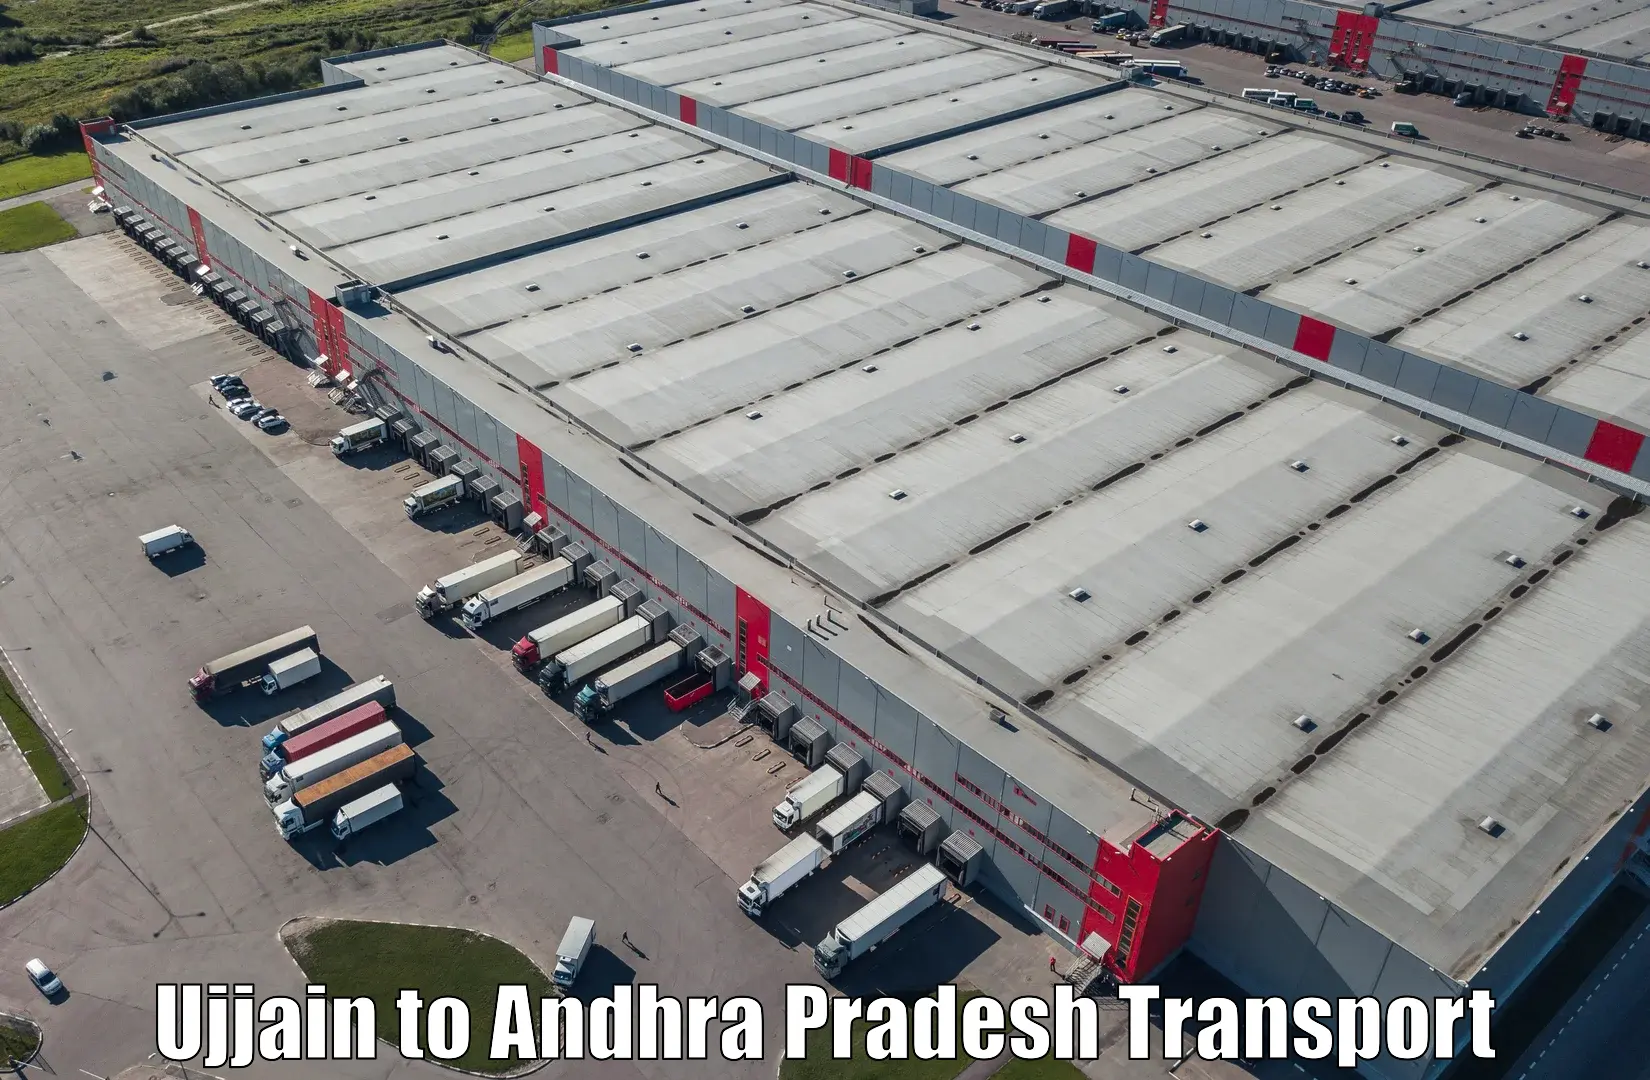 Land transport services in Ujjain to Singarayakonda